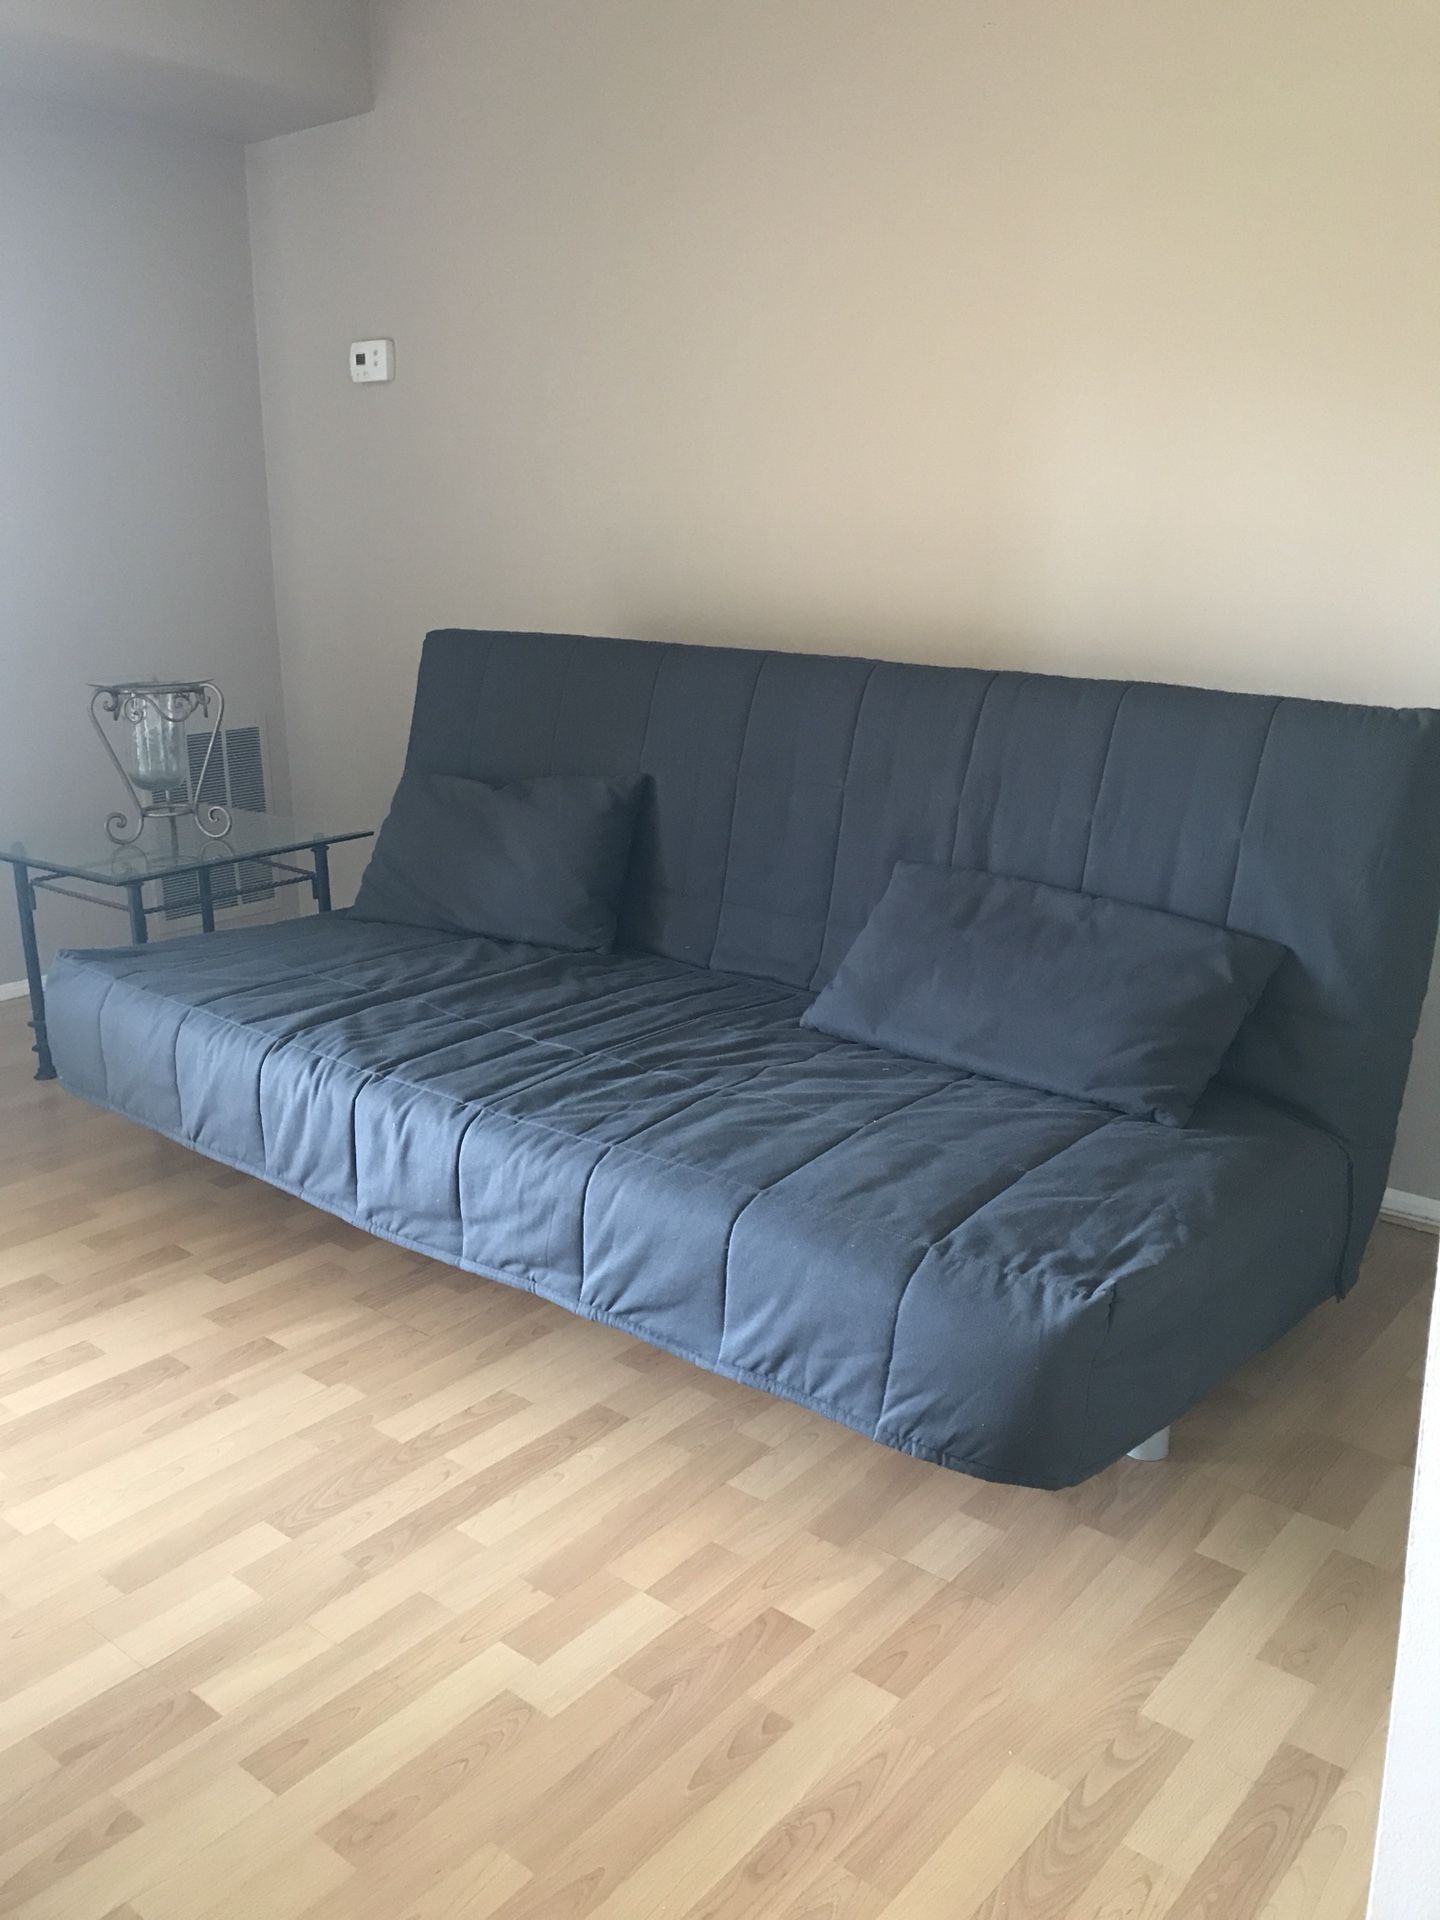 IKEA futon/sofa